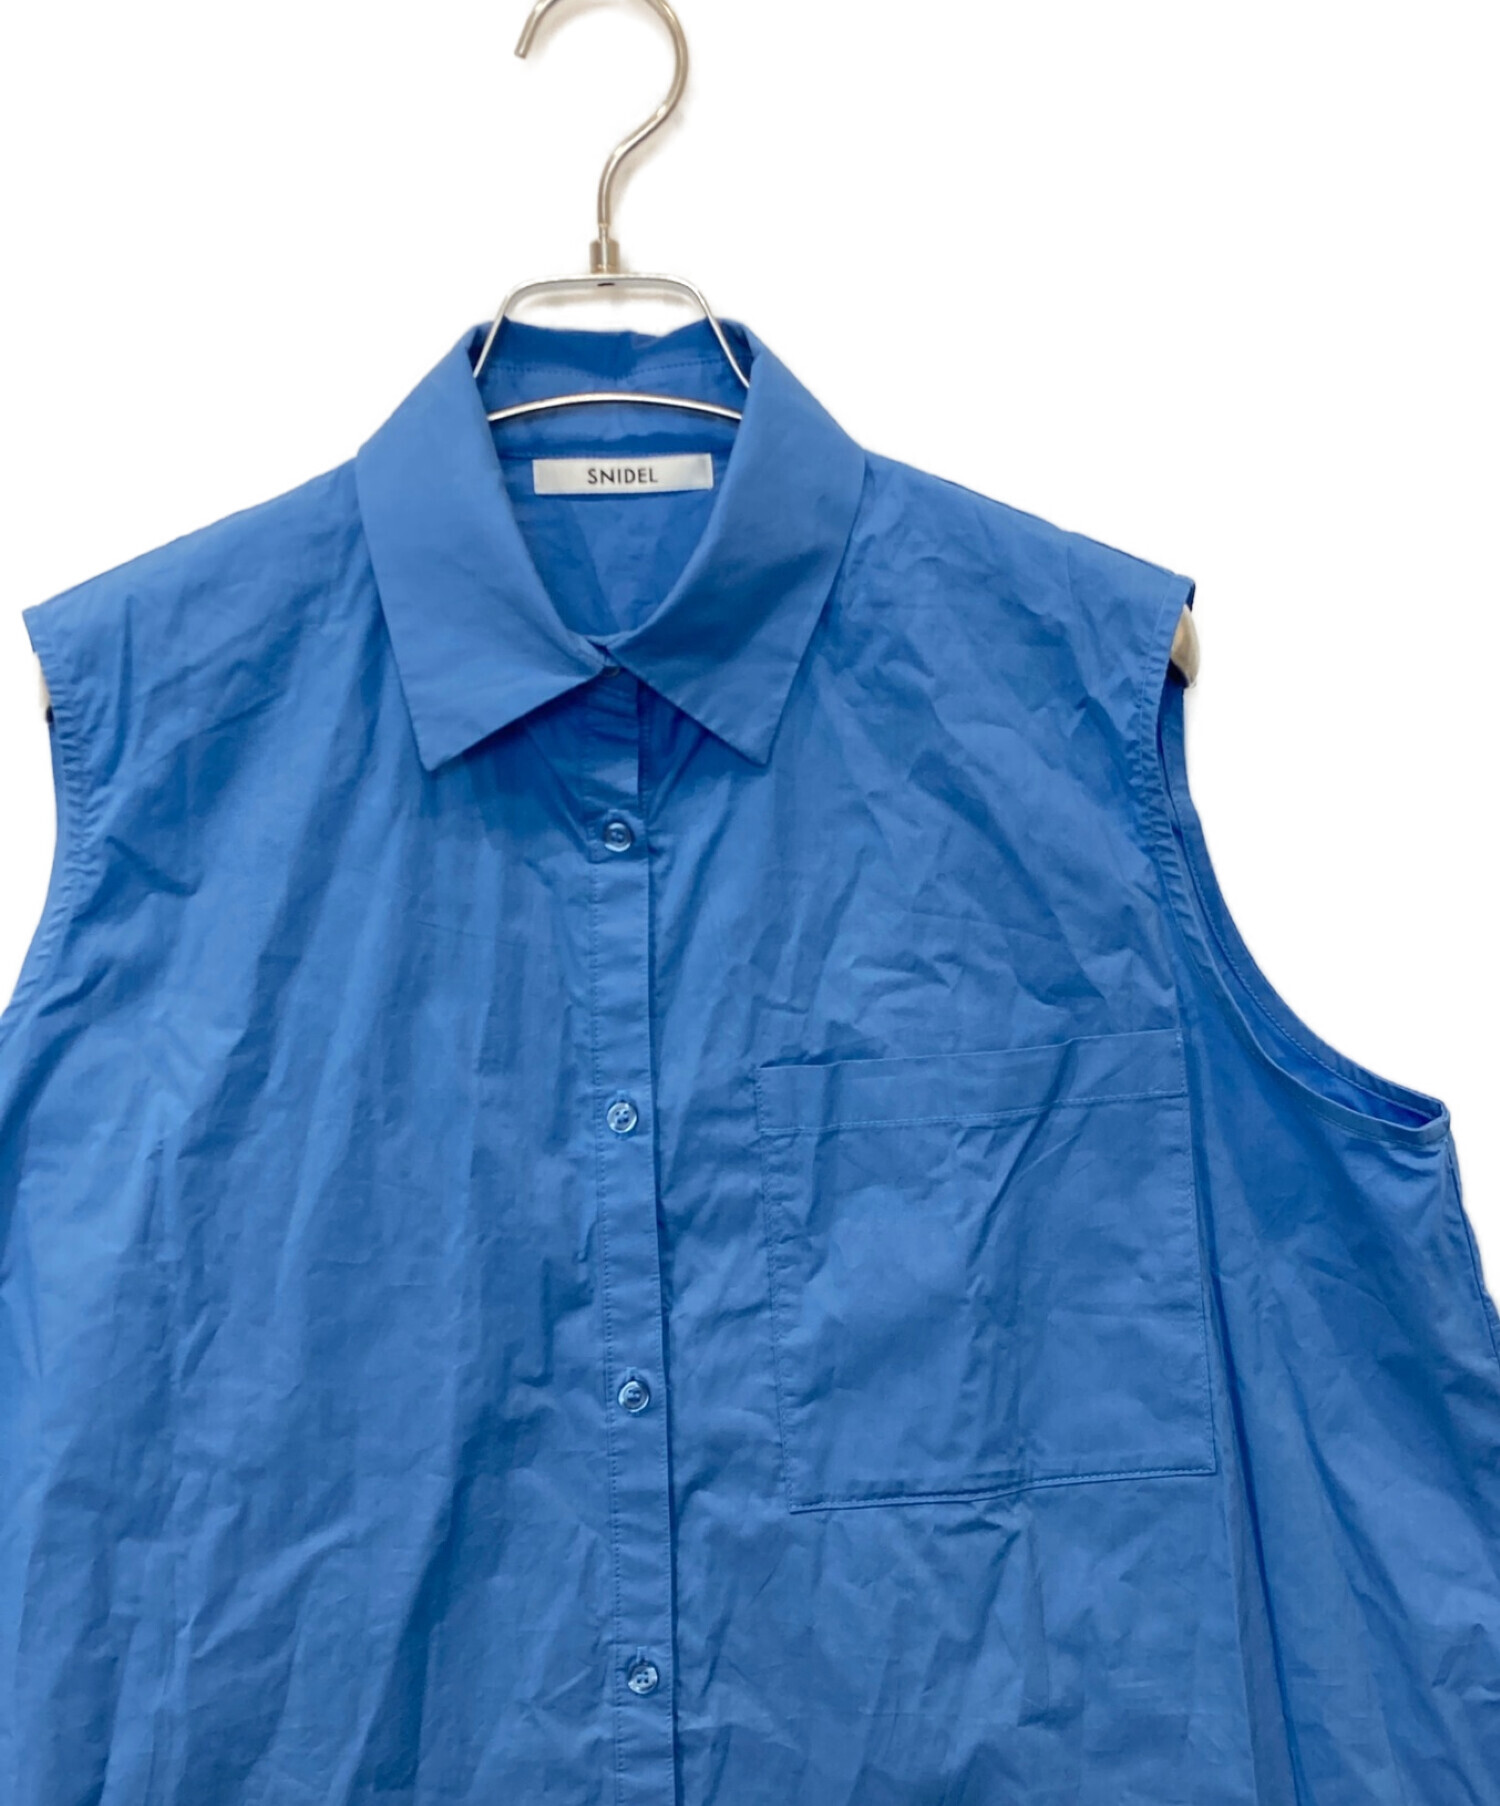 Snidel (スナイデル) ニットレイヤードシャツミニワンピース ブルー サイズ:FREE